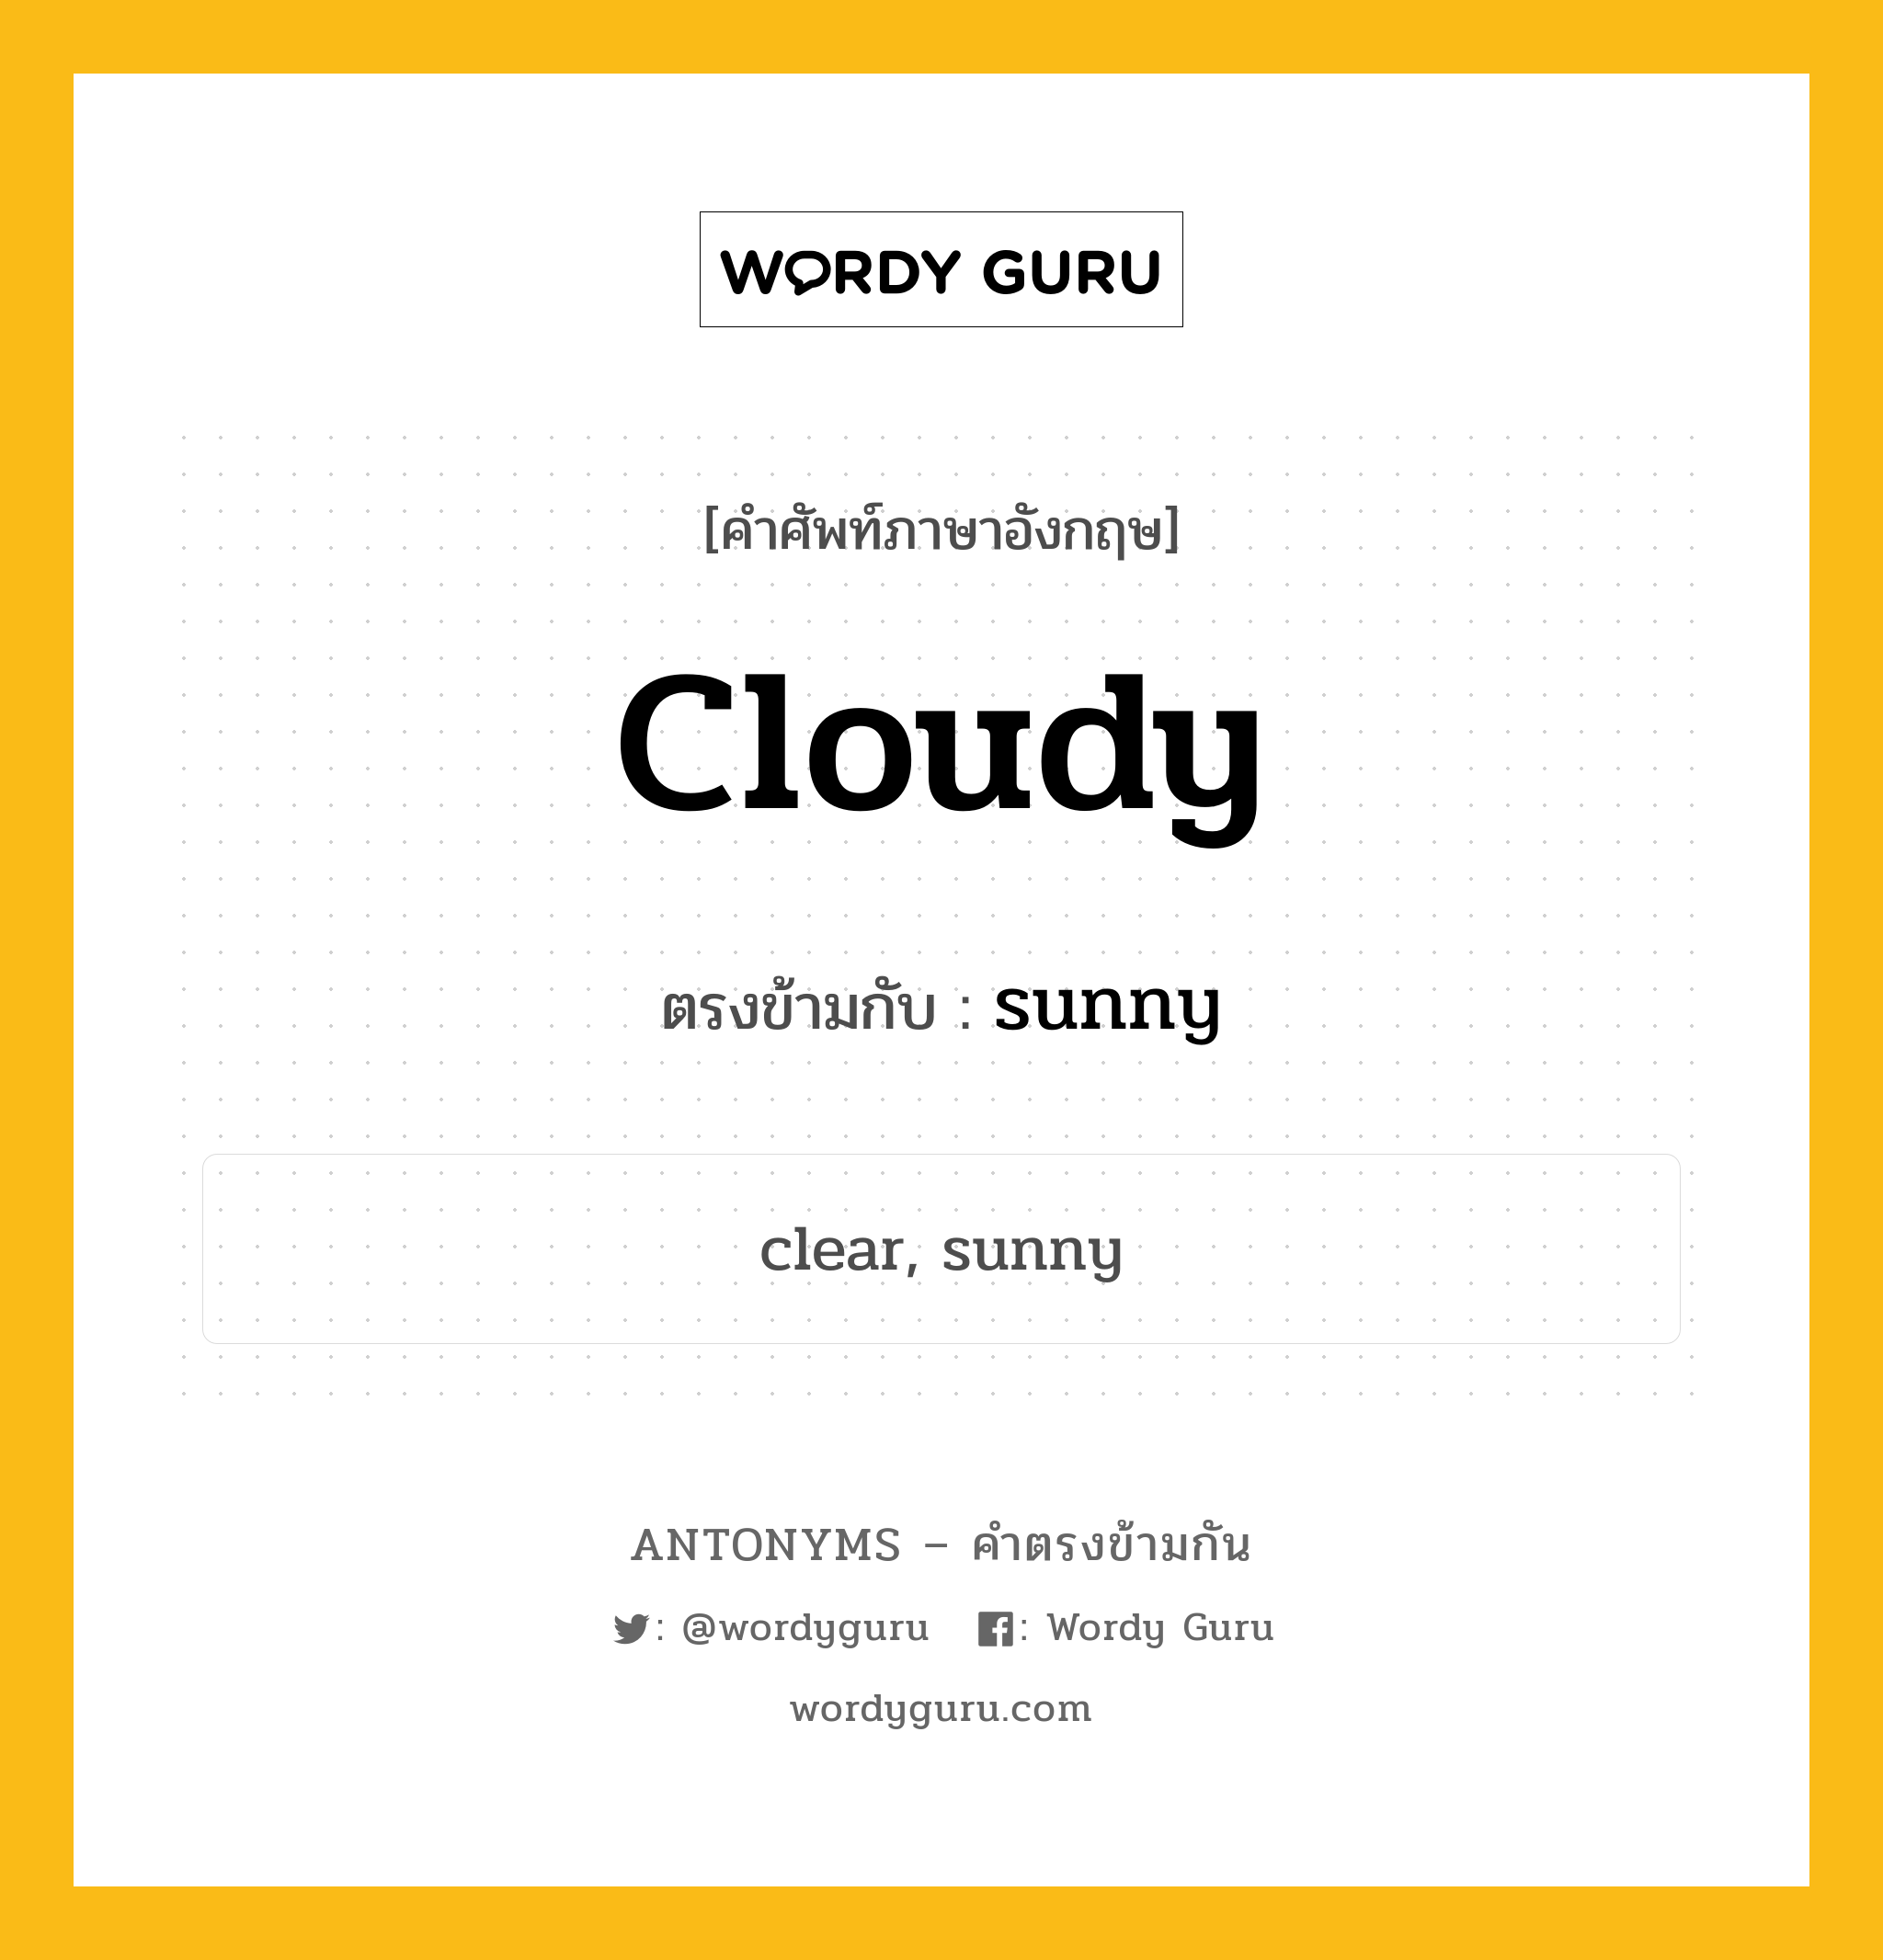 cloudy เป็นคำตรงข้ามกับคำไหนบ้าง?, คำศัพท์ภาษาอังกฤษ cloudy ตรงข้ามกับ sunny หมวด sunny